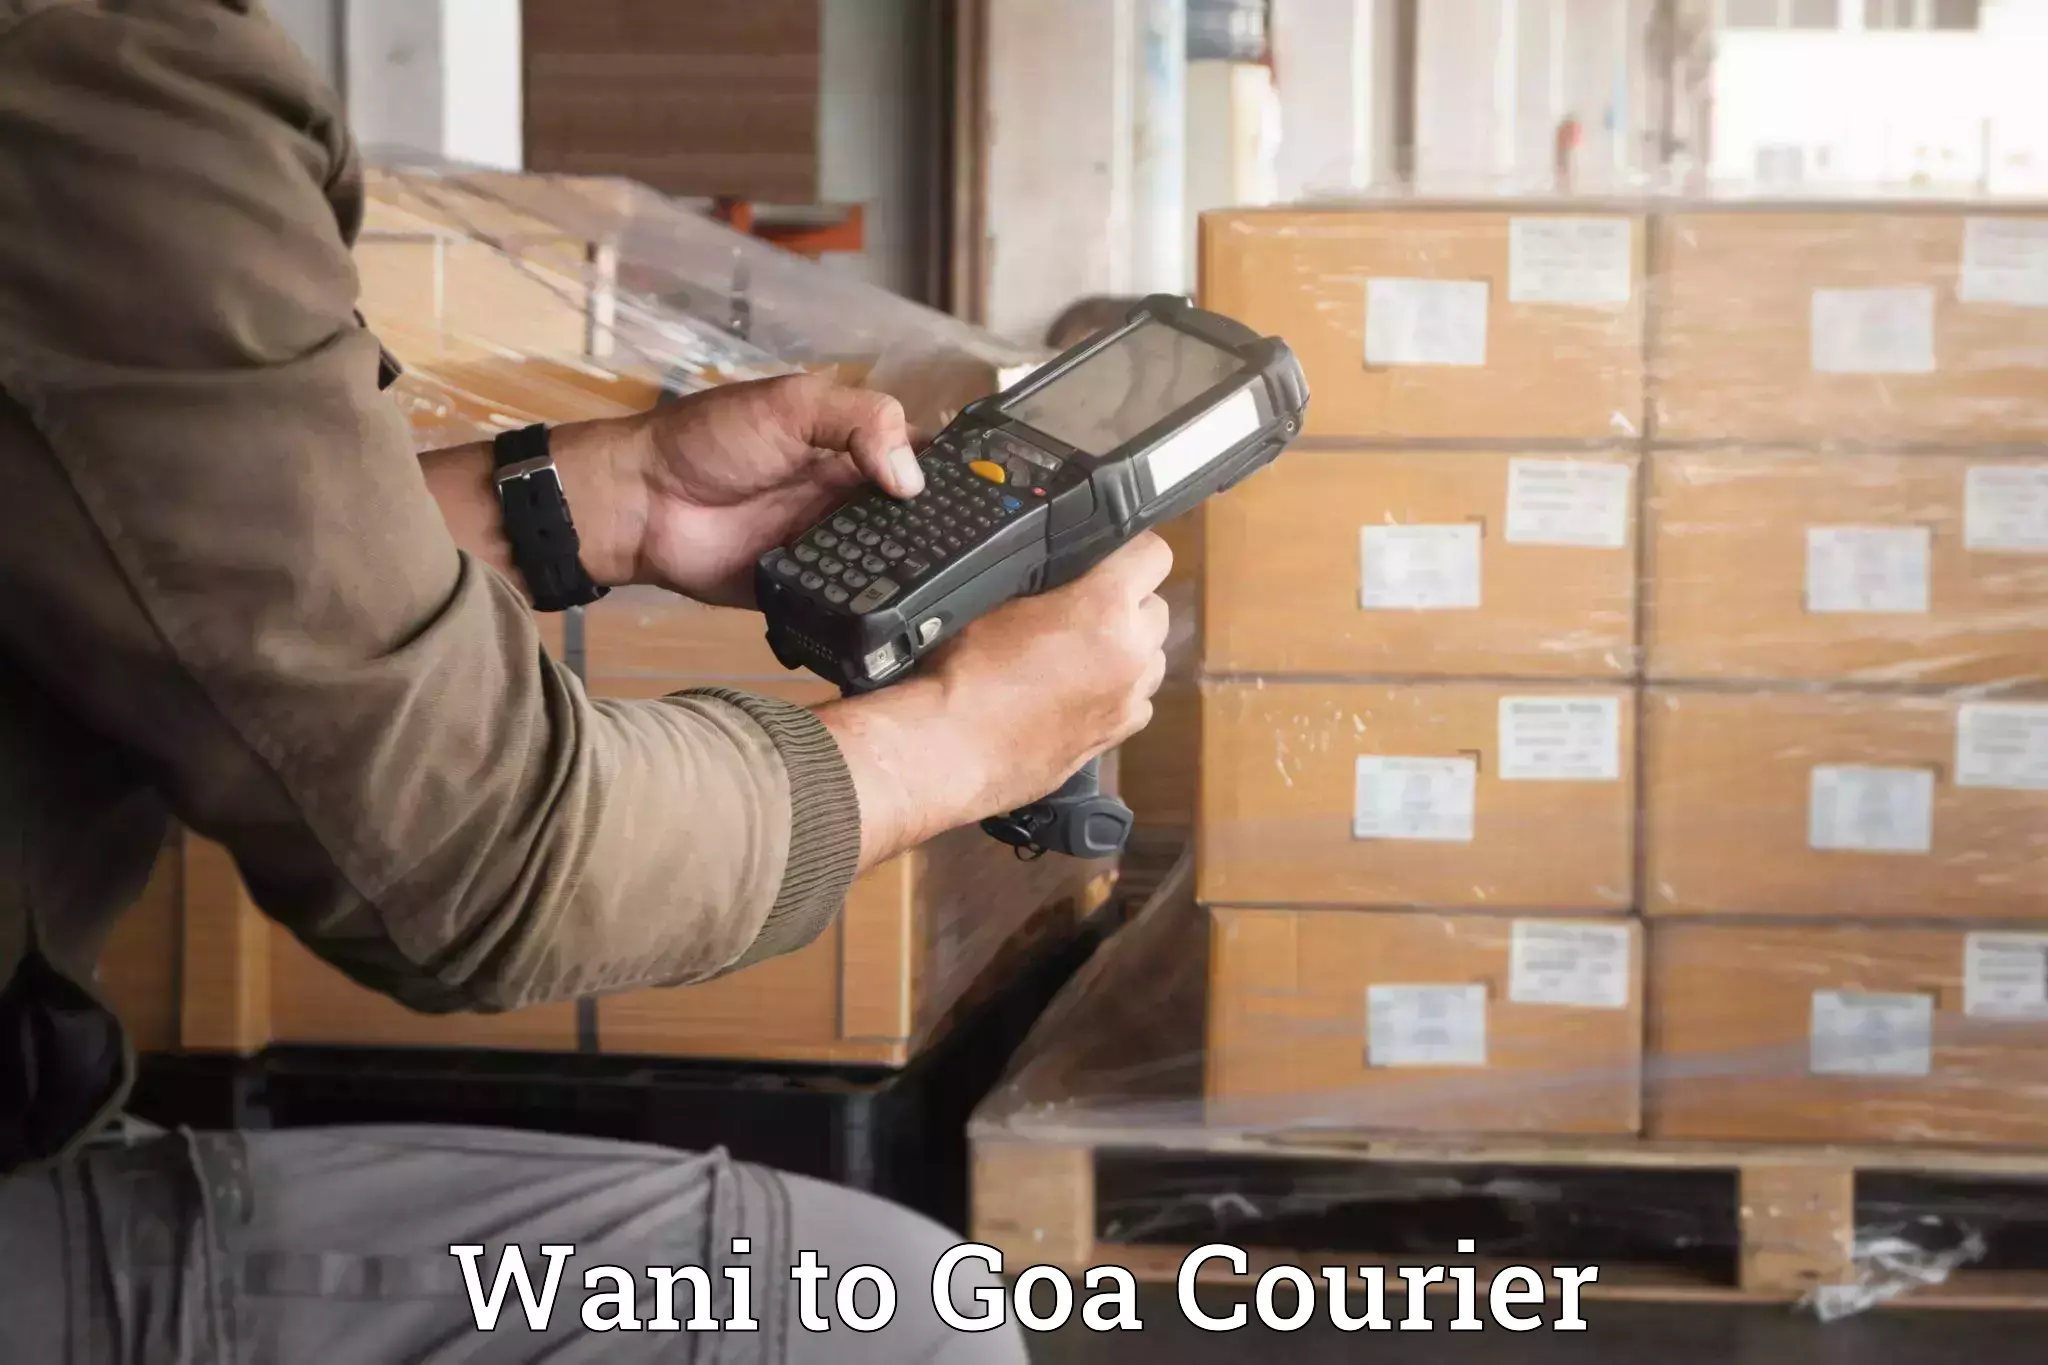 Hassle-free luggage shipping Wani to Goa University